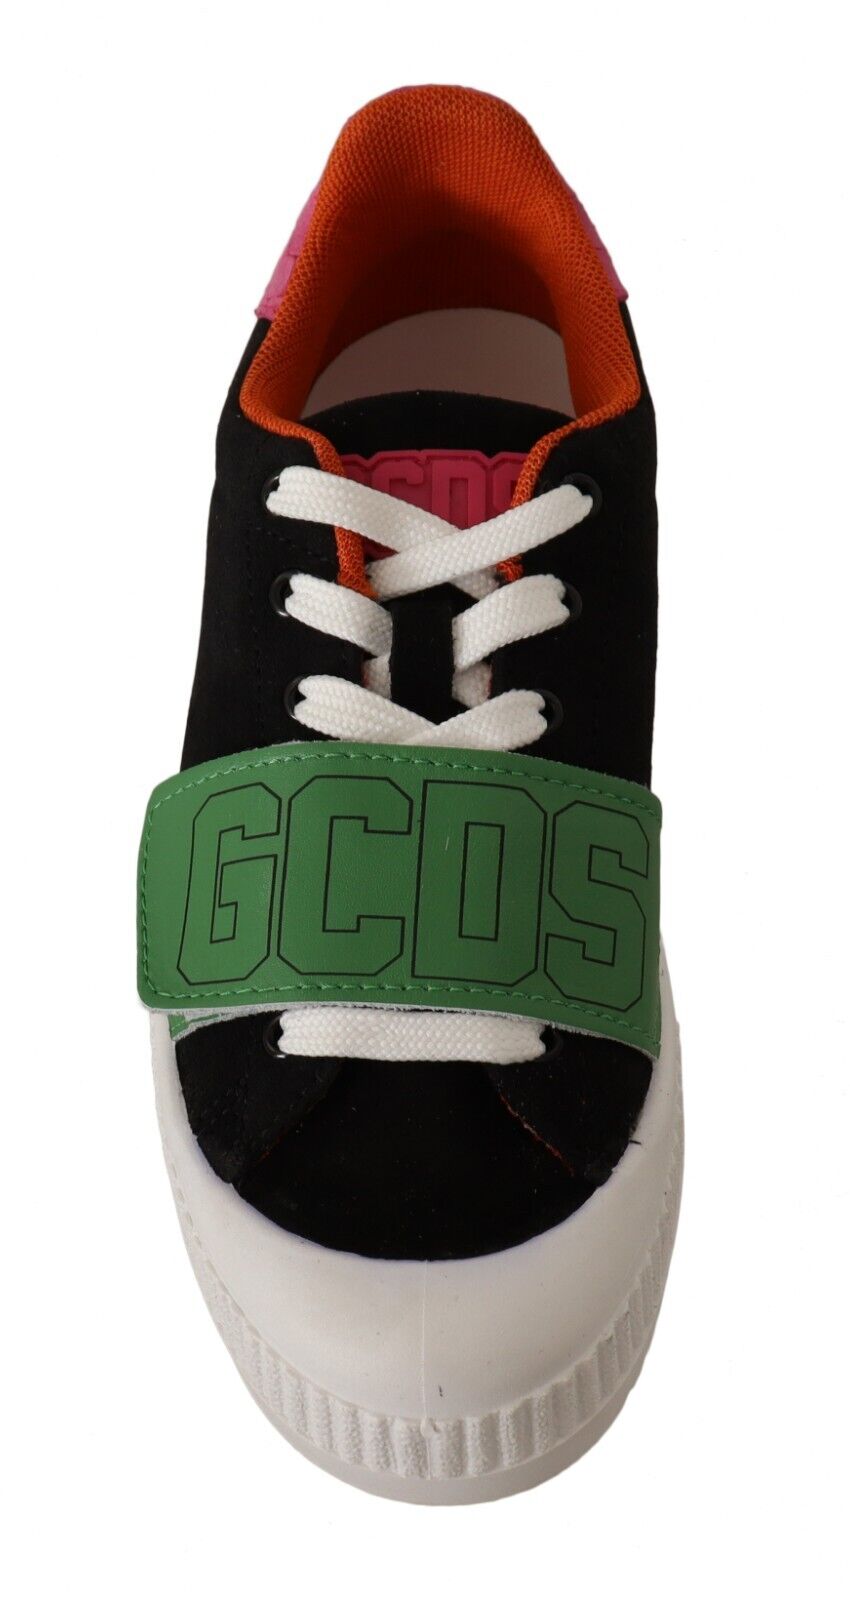 GCDS Multicolor Suede Low Top Lace Up Women Sneakers Shoes - DEA STILOSA MILANO